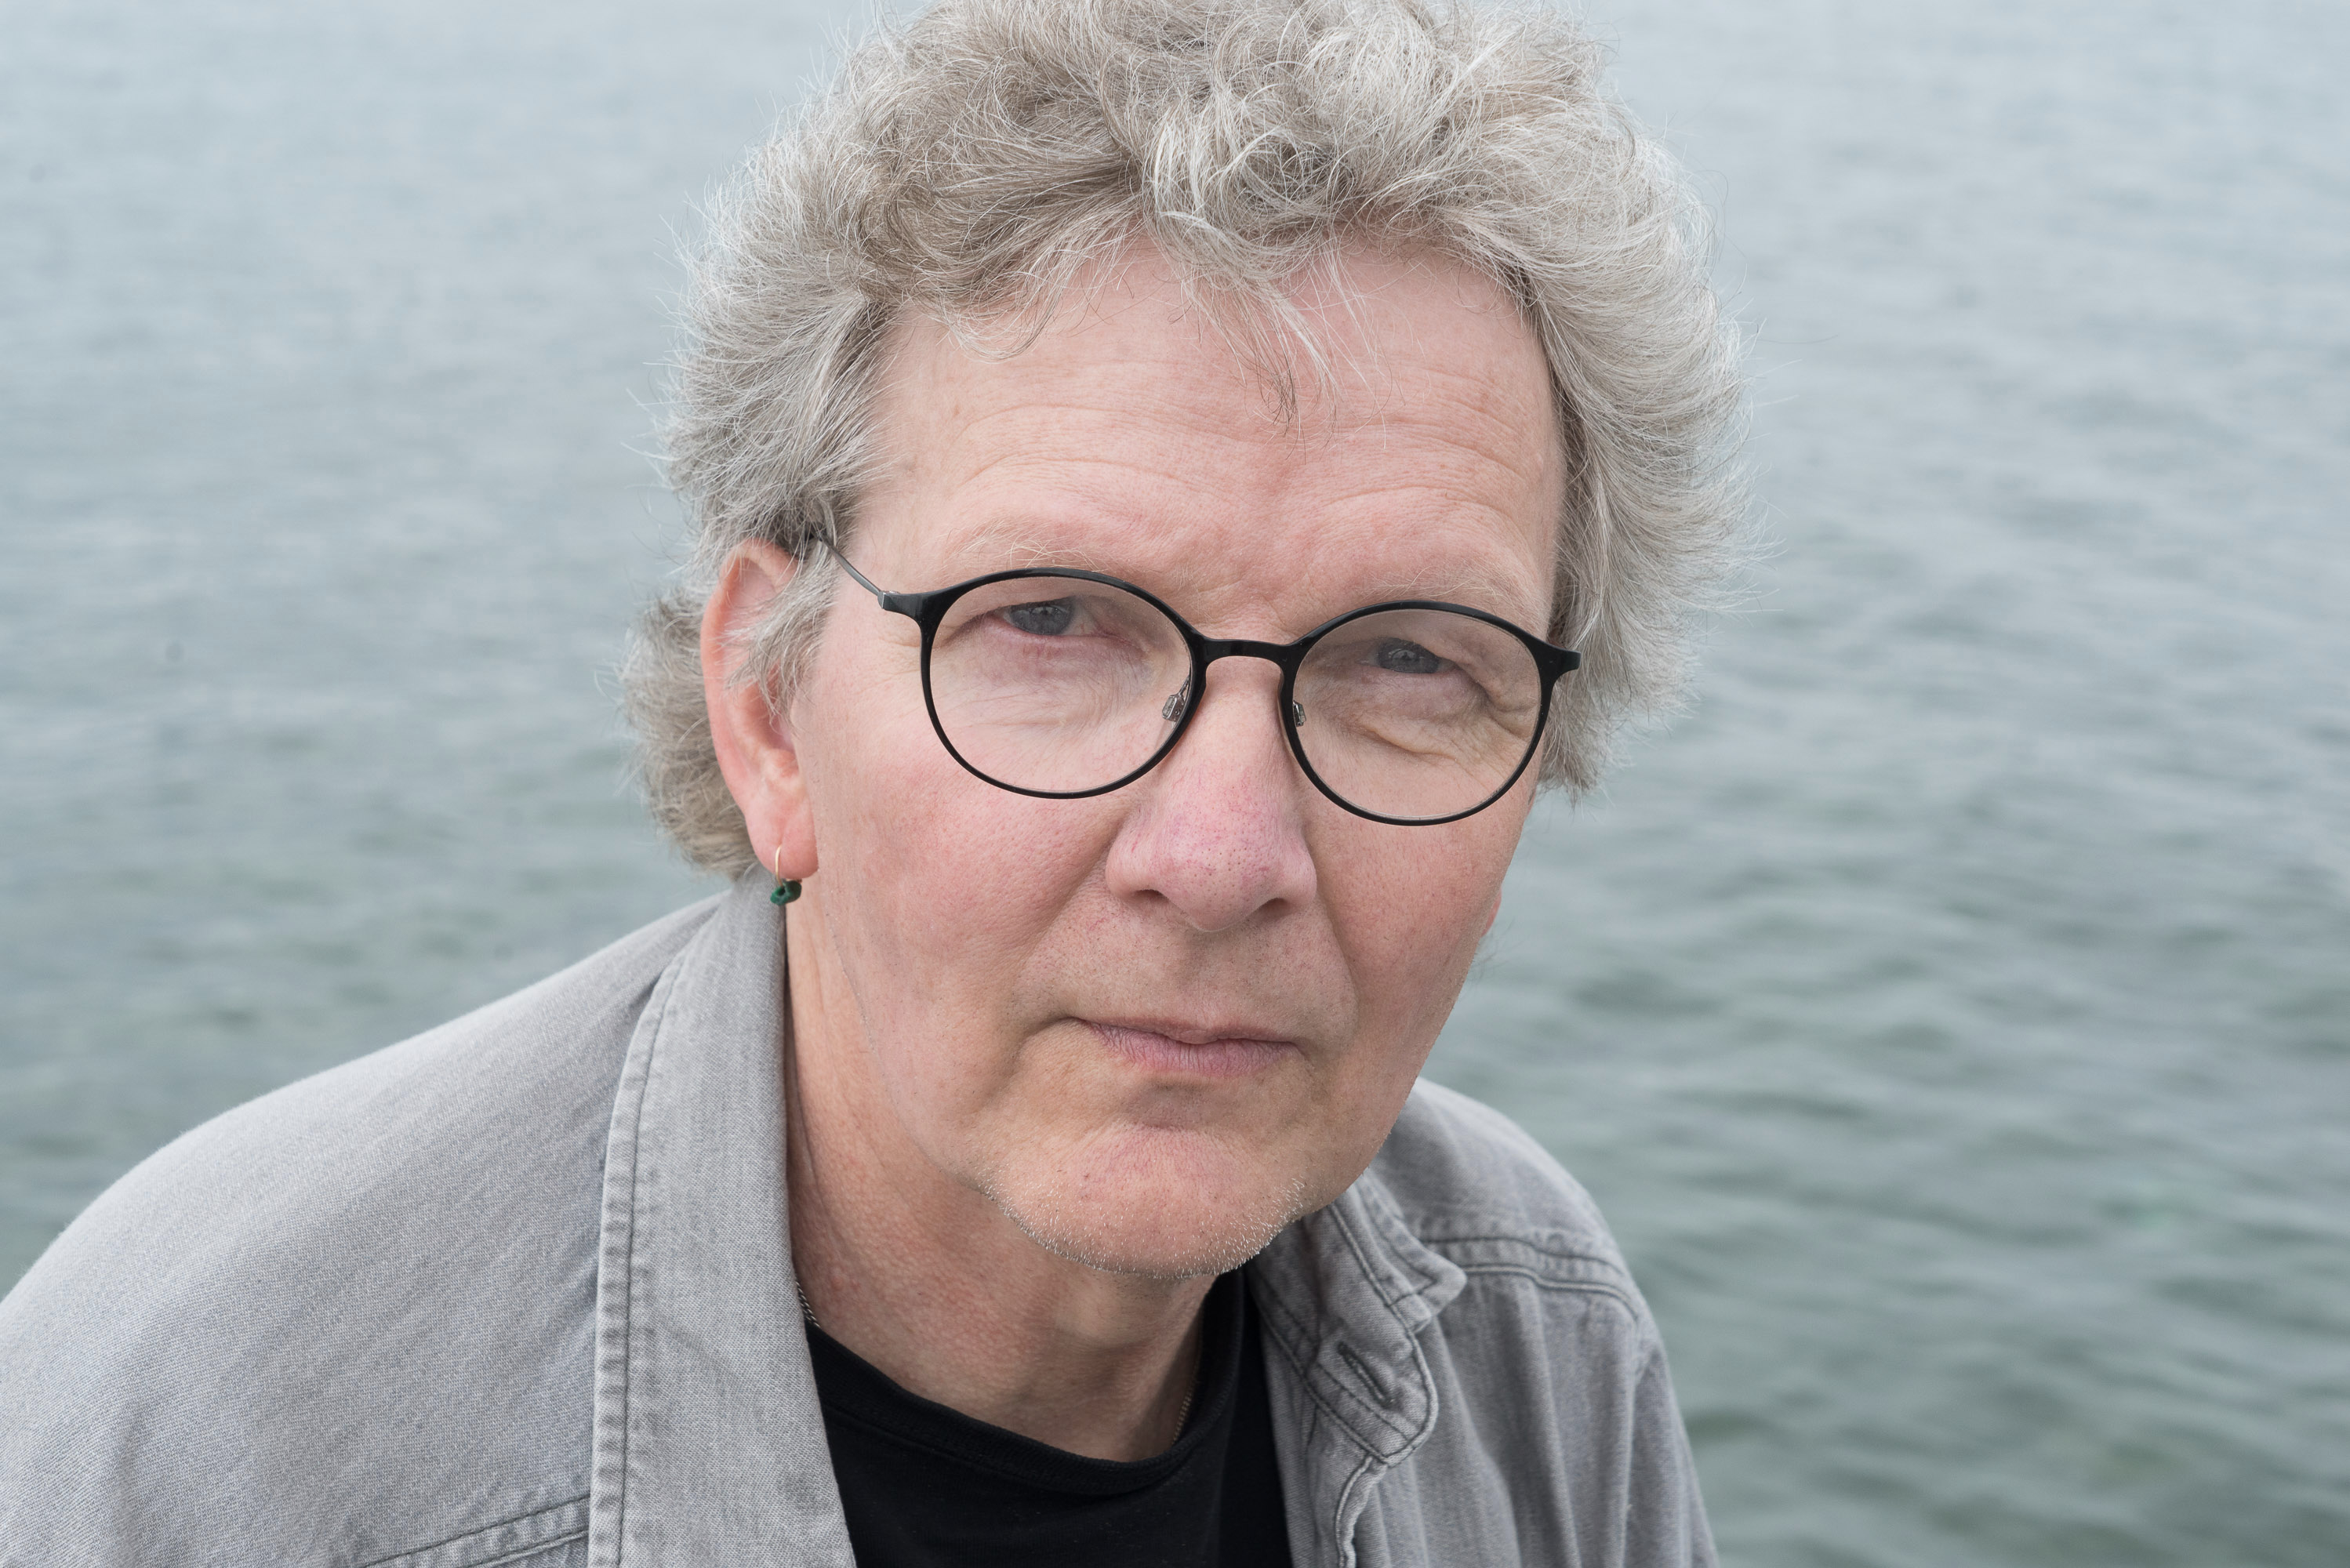 Bilden föreställer Karl-Einar Löfqvist. Han ser allvarlig ut. Han har kort hår, grå skjorta och bär runda glasögon.   